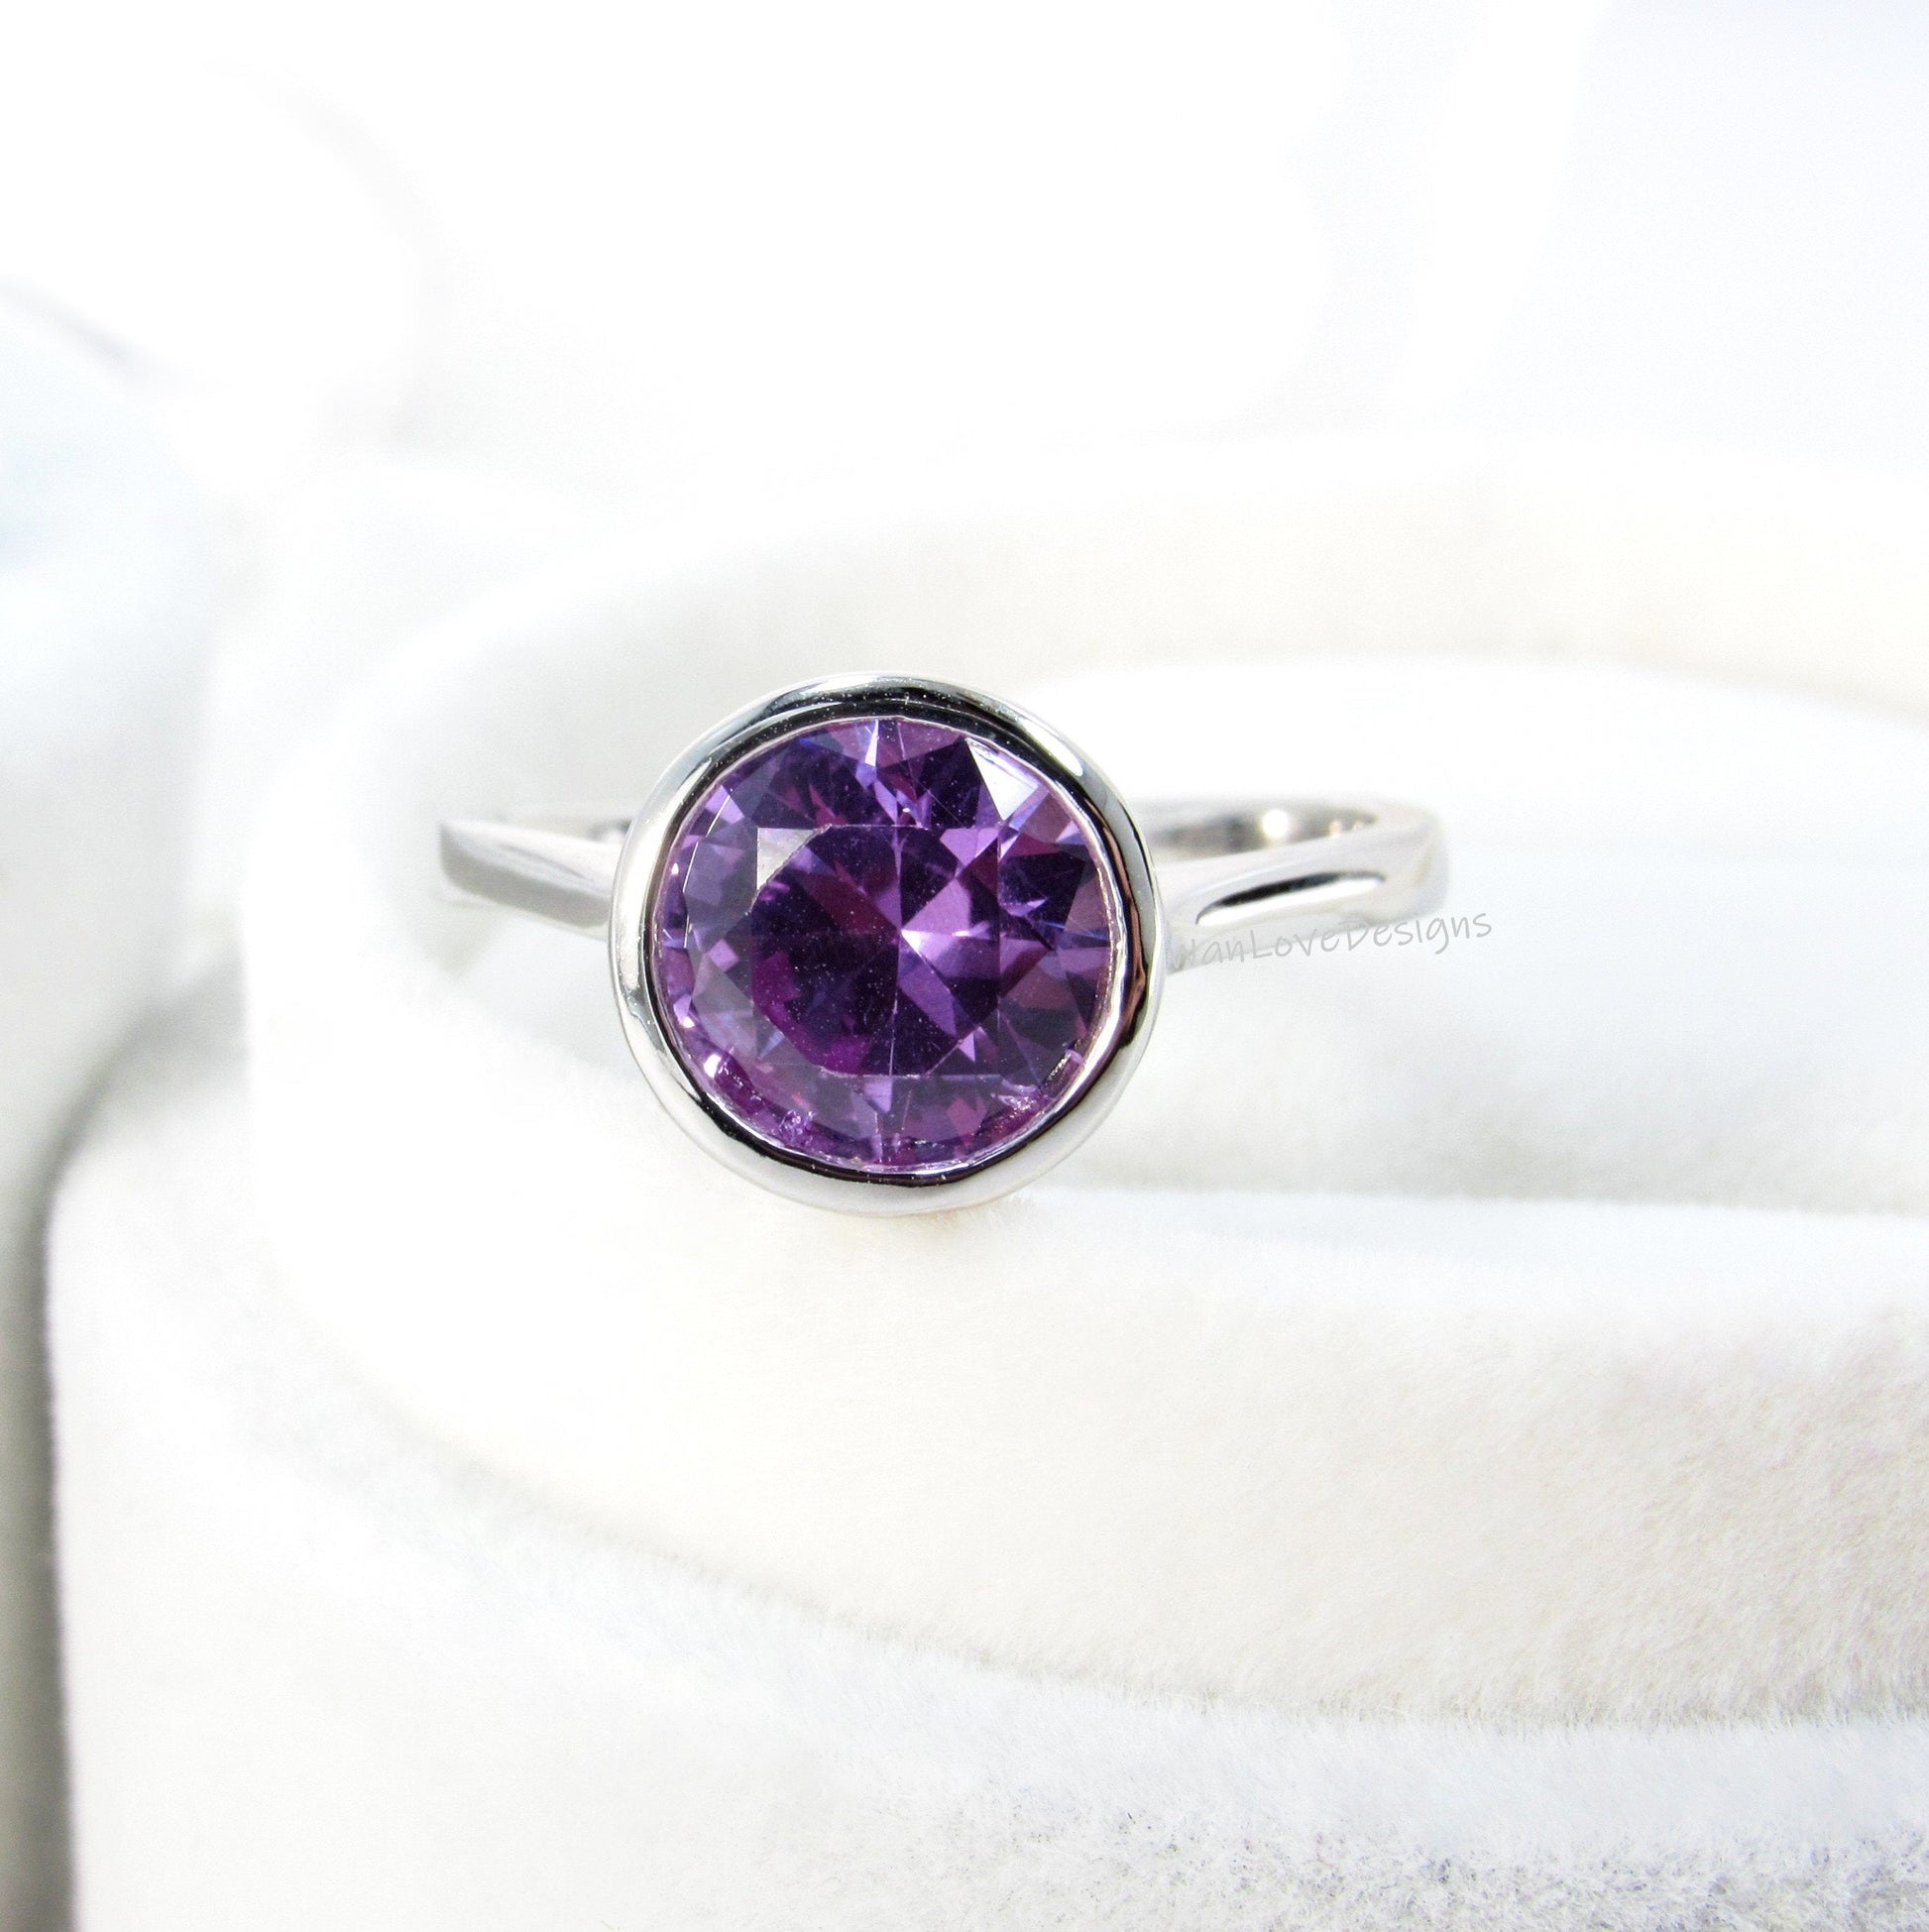 2ct Bezel Ring Design/ Round Shape Diamond Bezel Ring/ Rose Gold Ring/ Moissanite Bezel Engagement Ring/ Birthstone Choice Ring/Promise Ring Wan Love Designs